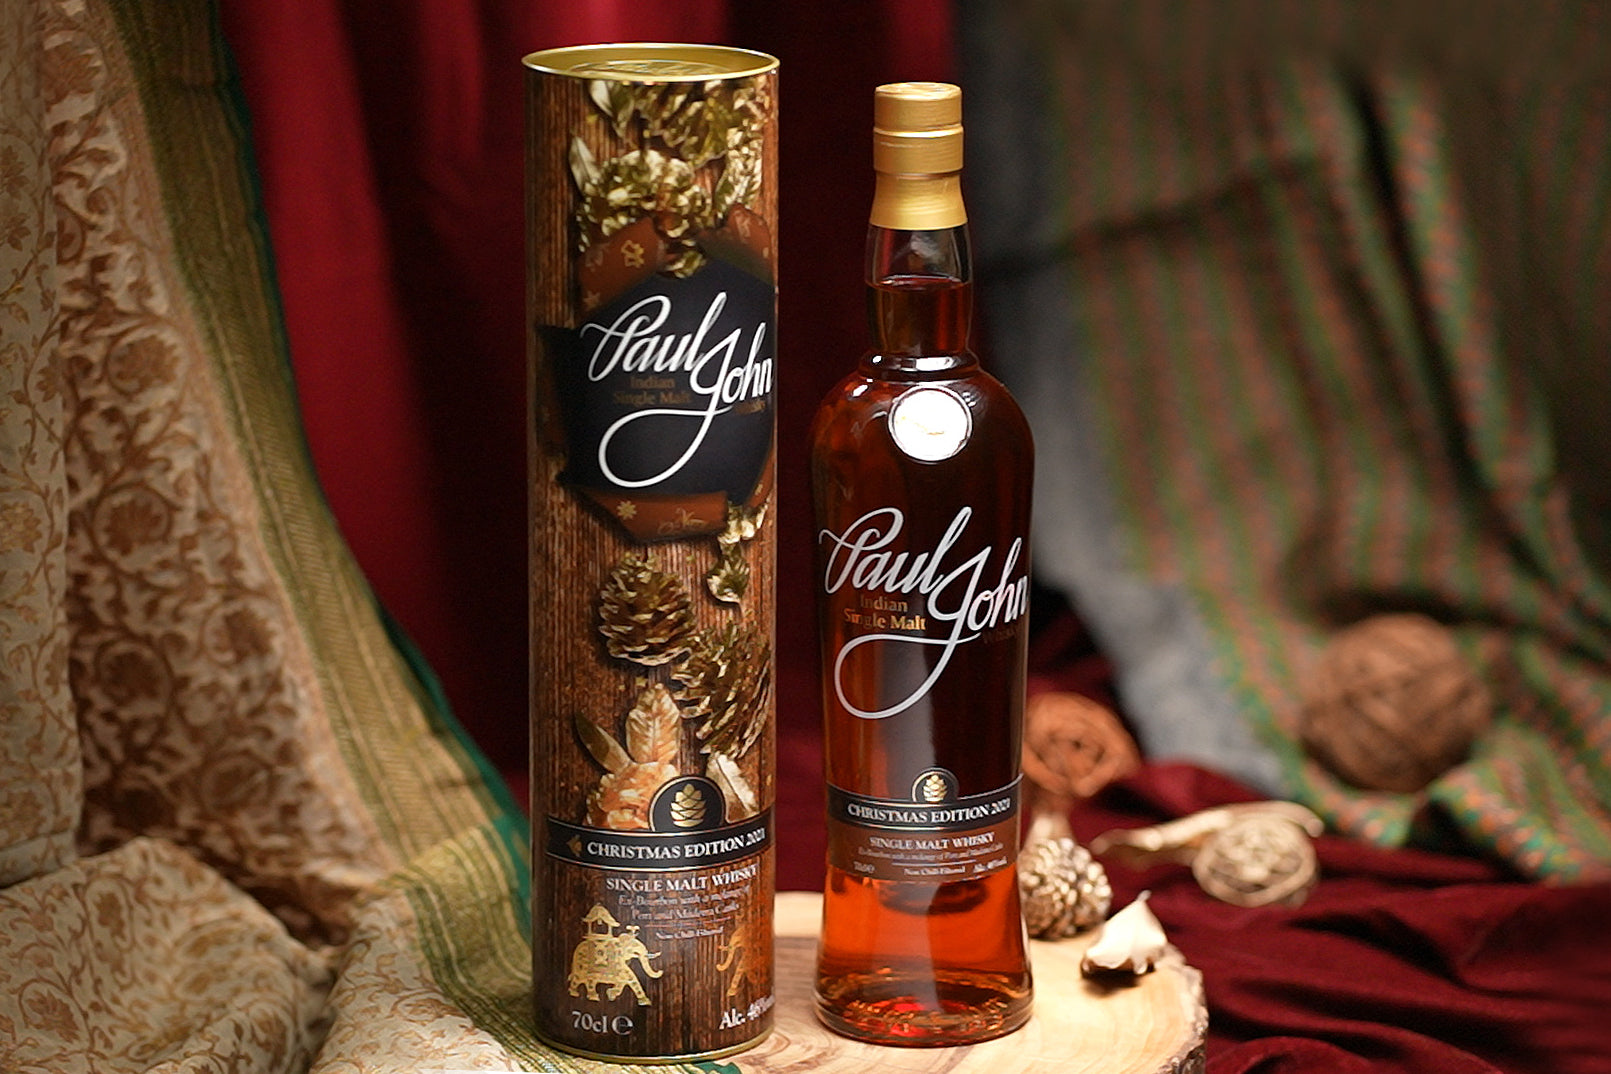 Paul John Indian Single Malt Whisky Christmas Edition